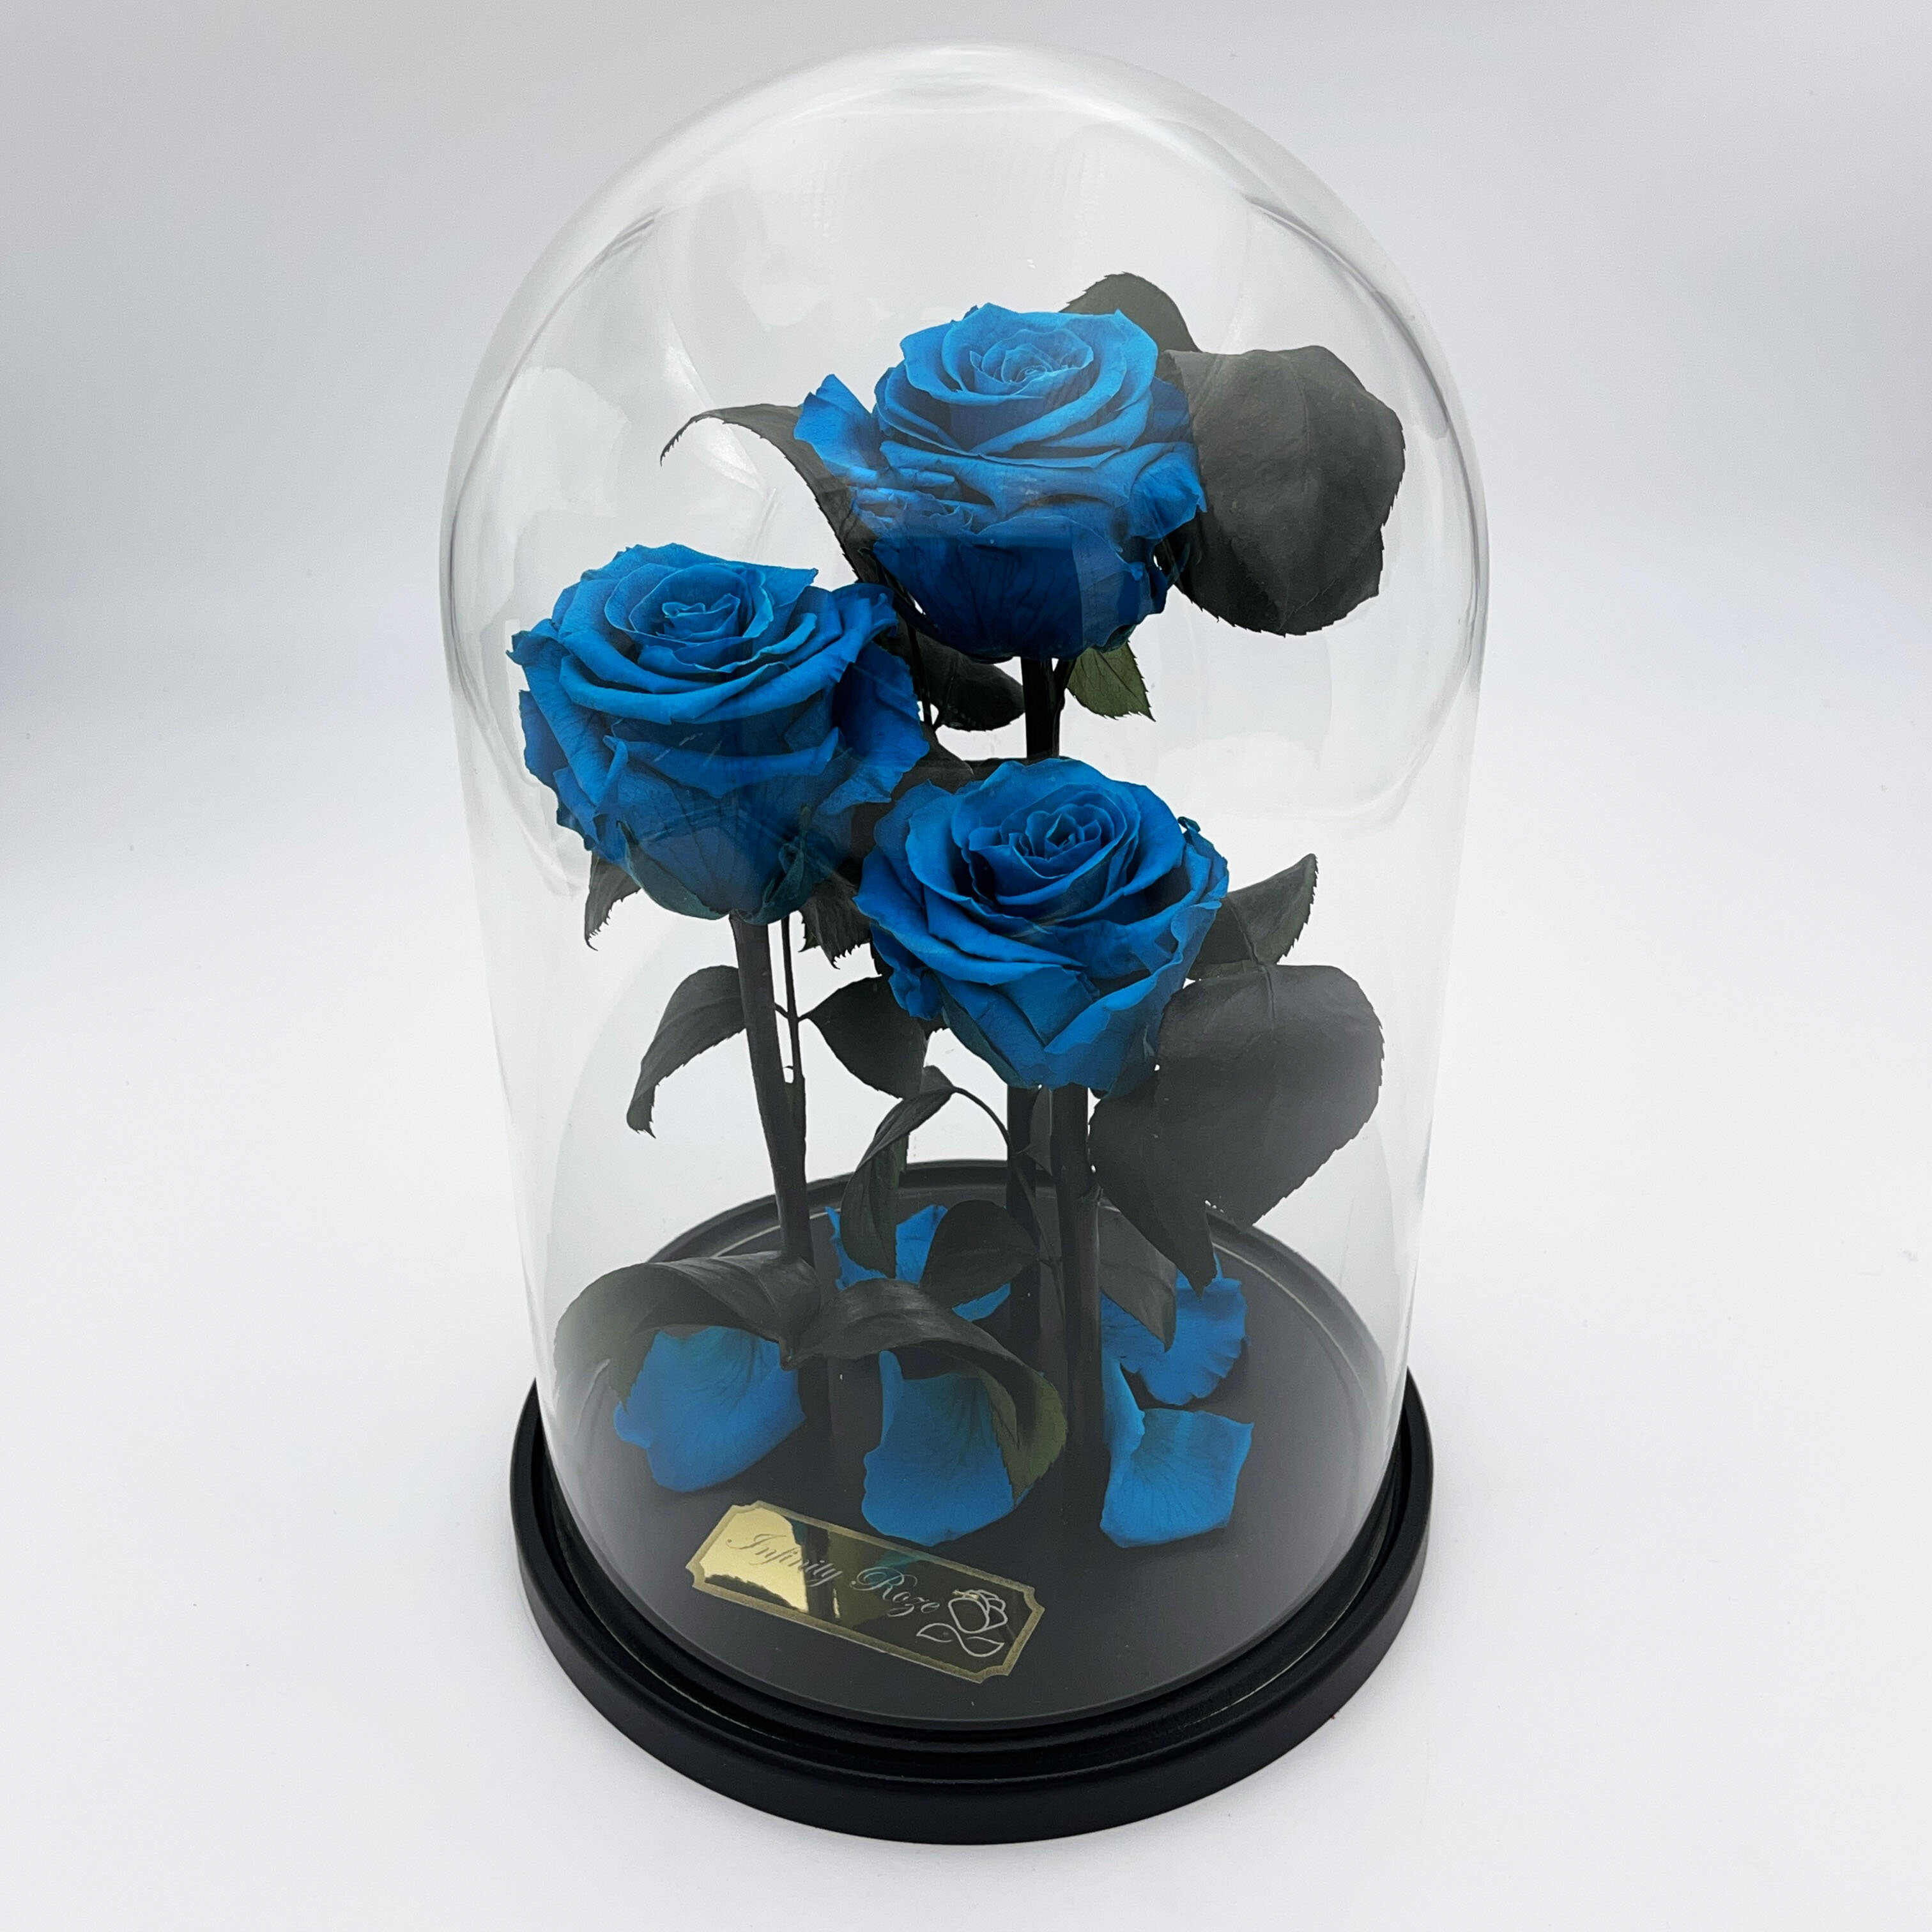 Rožė kolboje (mieganti rožė) Trinity, Tiffany (30 cm aukščio / 19 cm  pločio) kaina | pigu.lt